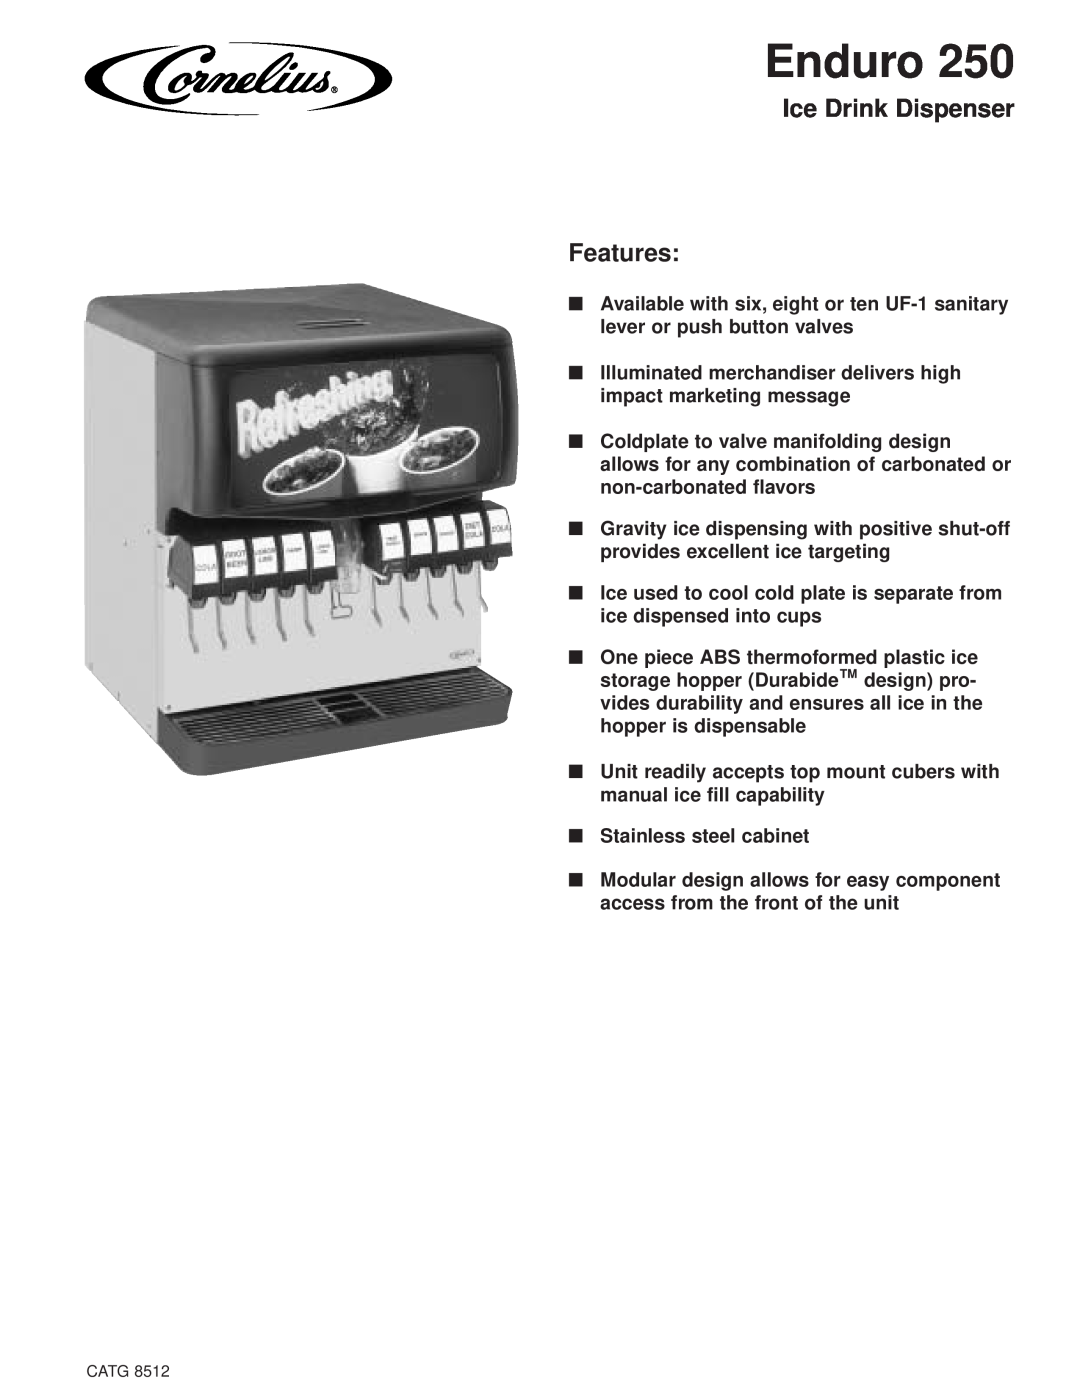 Cornelius Enduro 250 manual Ice Drink Dispenser Features 